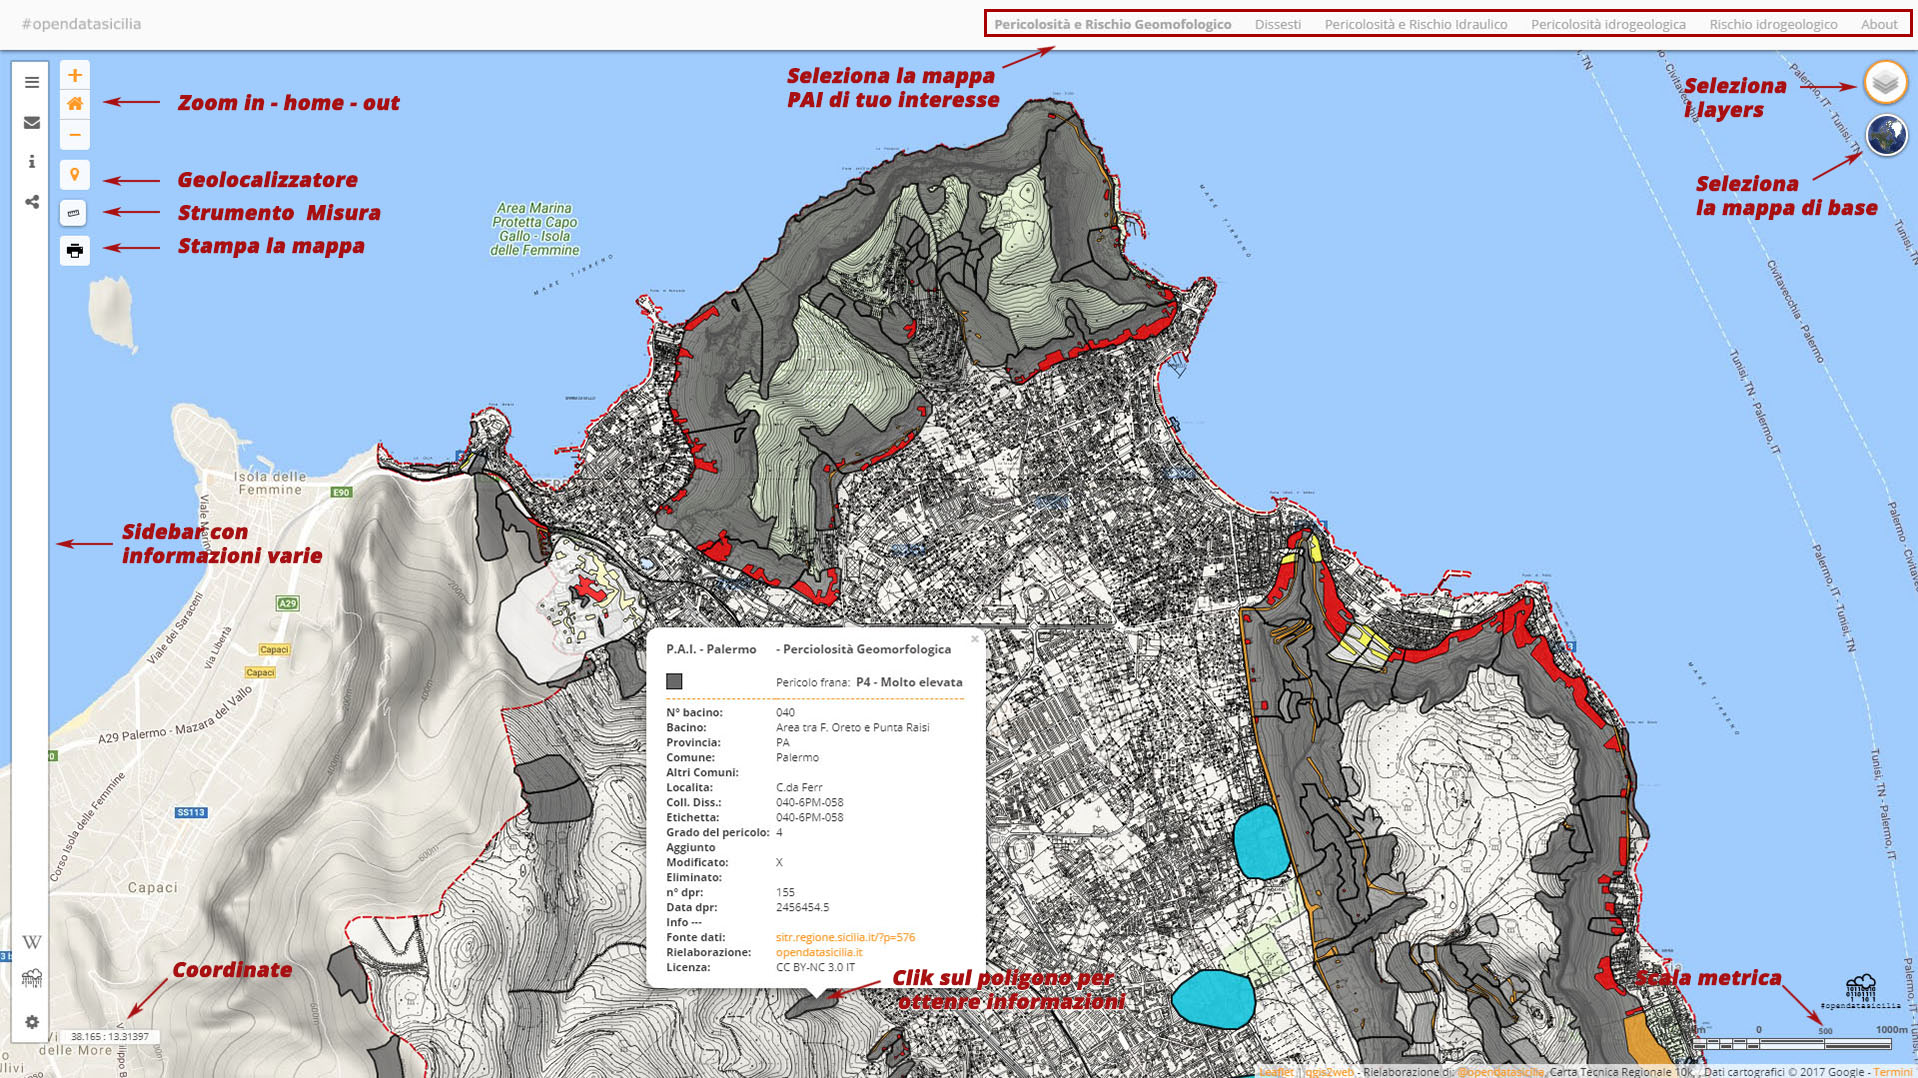 Palermo, Piano per l’Assetto Idrogeologico (P.A.I.) mappa delle pericolosità e rischio geomorfologico, realizzata con Qgis e Leaflet